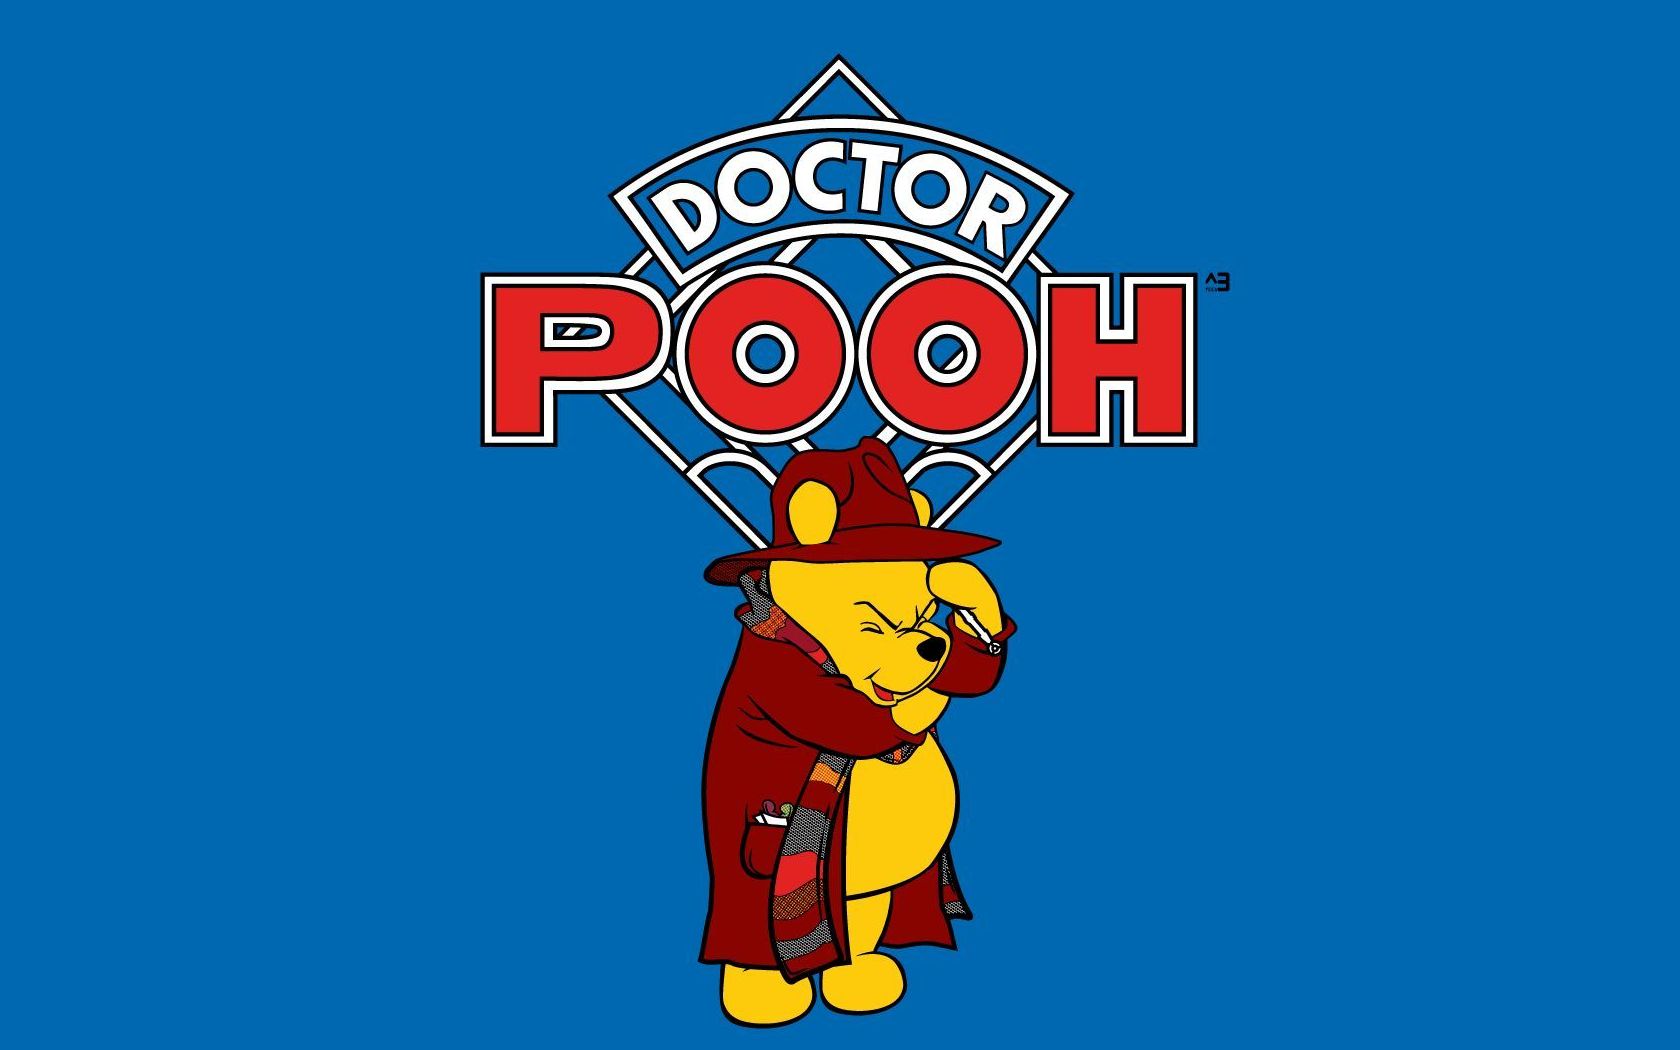 Descarga gratuita de fondo de pantalla para móvil de Winnie The Pooh, Series De Televisión.